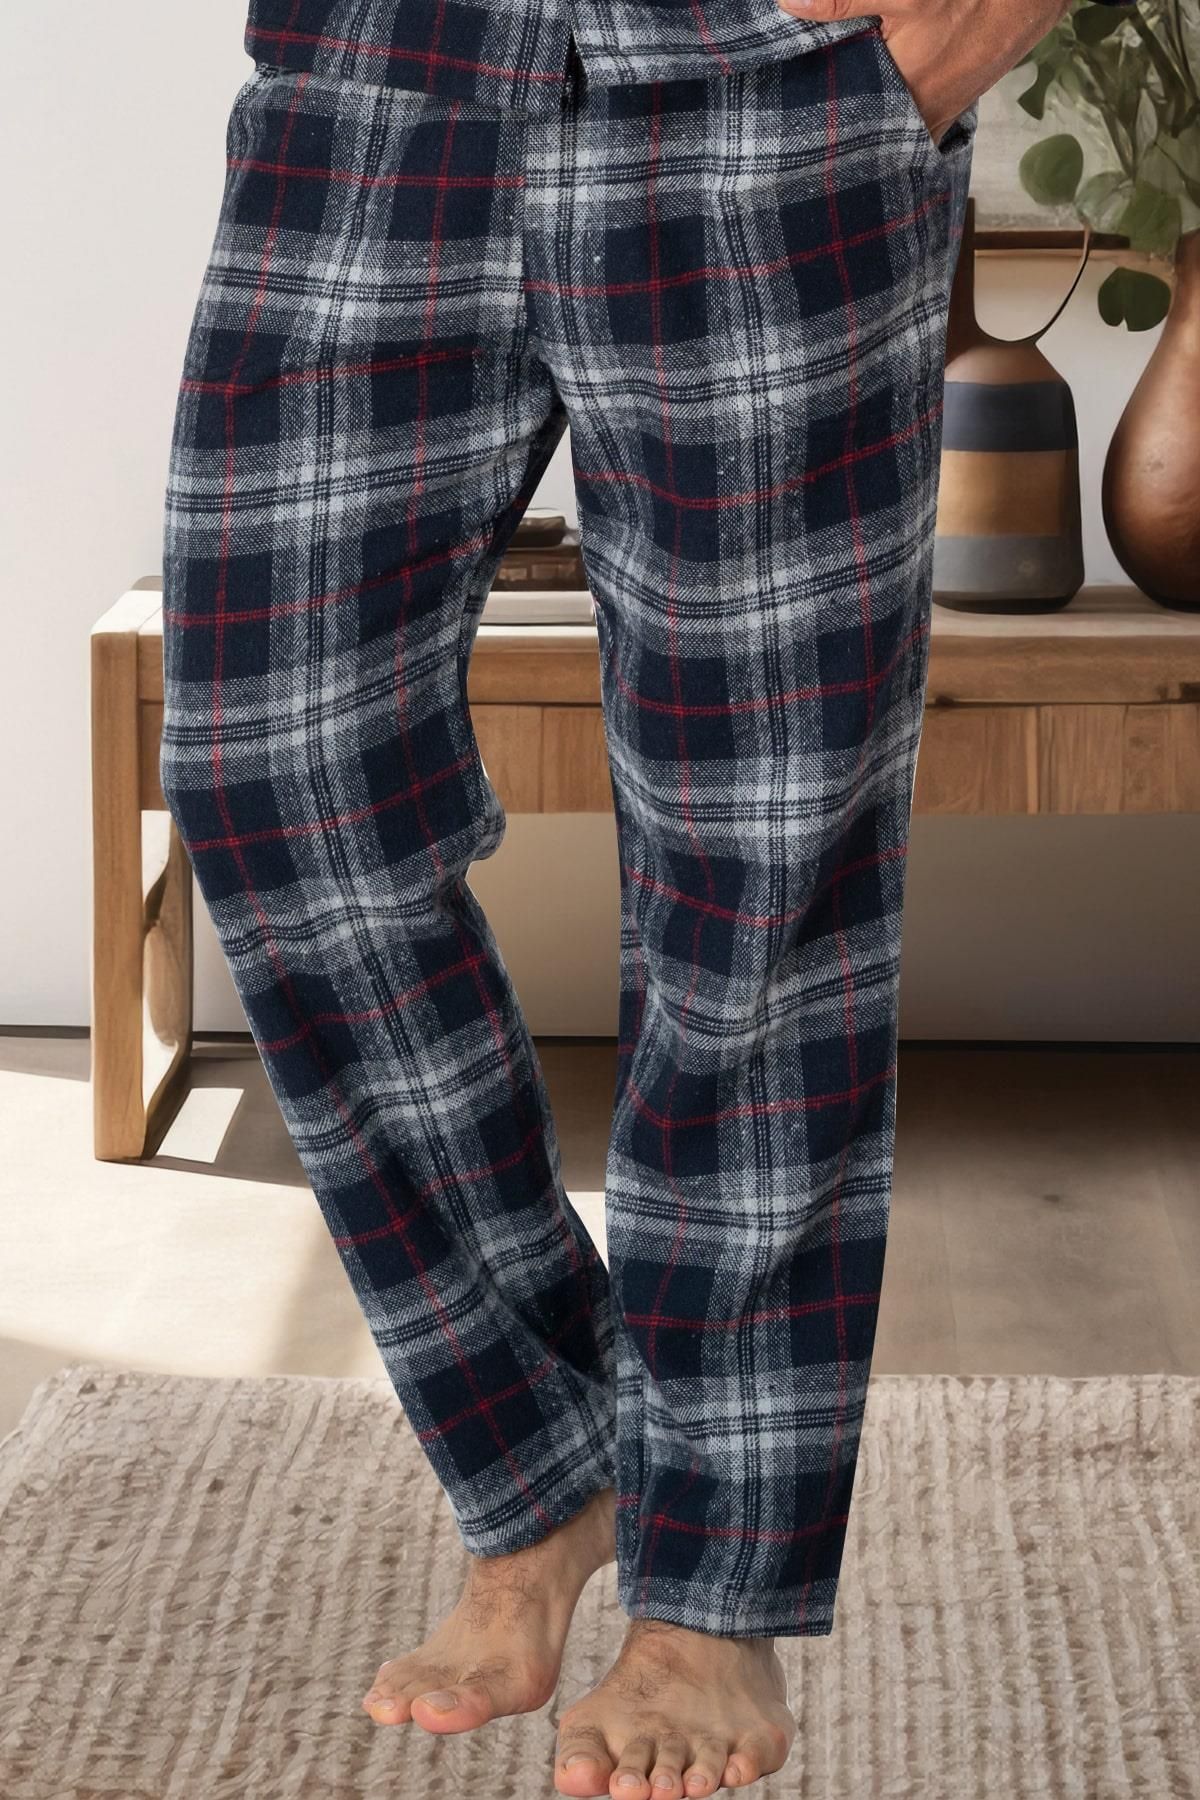 Mecit Pijama Ekoseli Erkek Tek Alt Pijama %75 Pamuk %25 Viskon. Model cep detaylıdır.Kış Sezonu